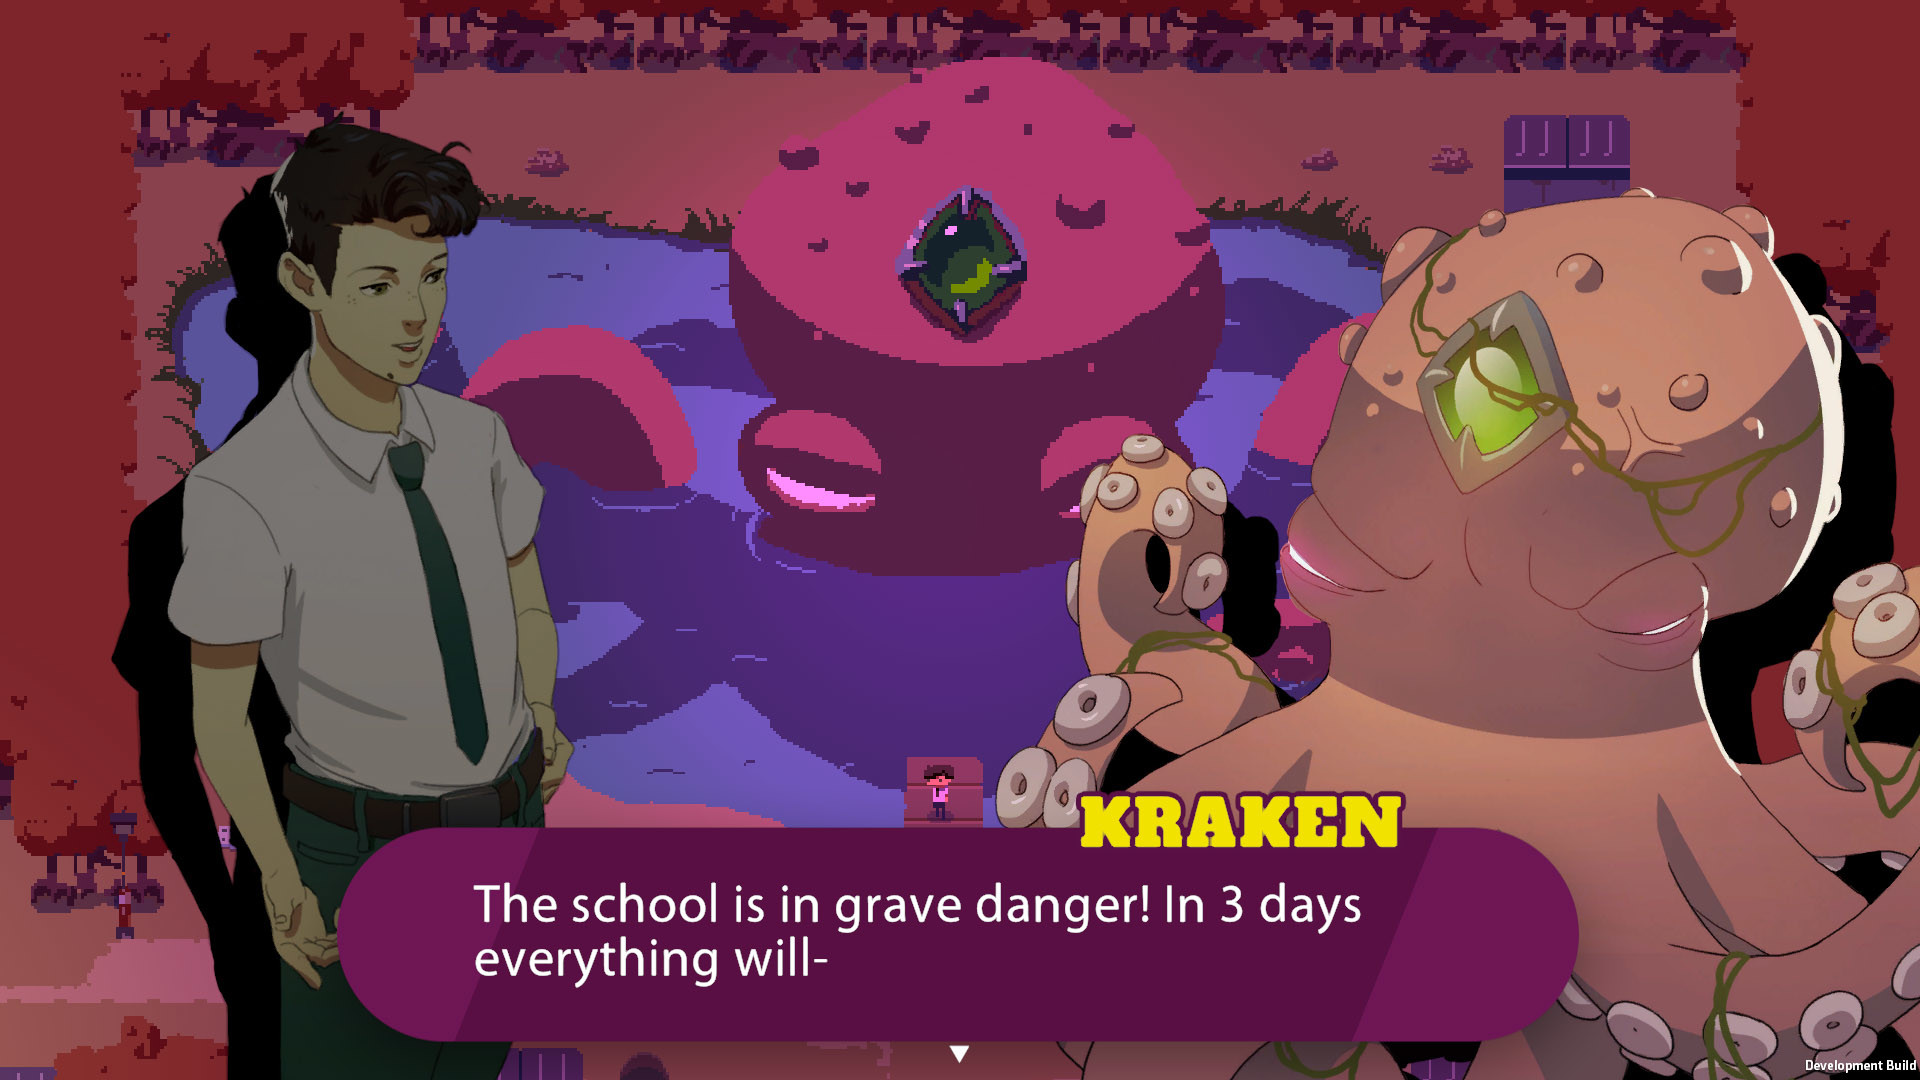 Kraken Academy!! Steam CD Key